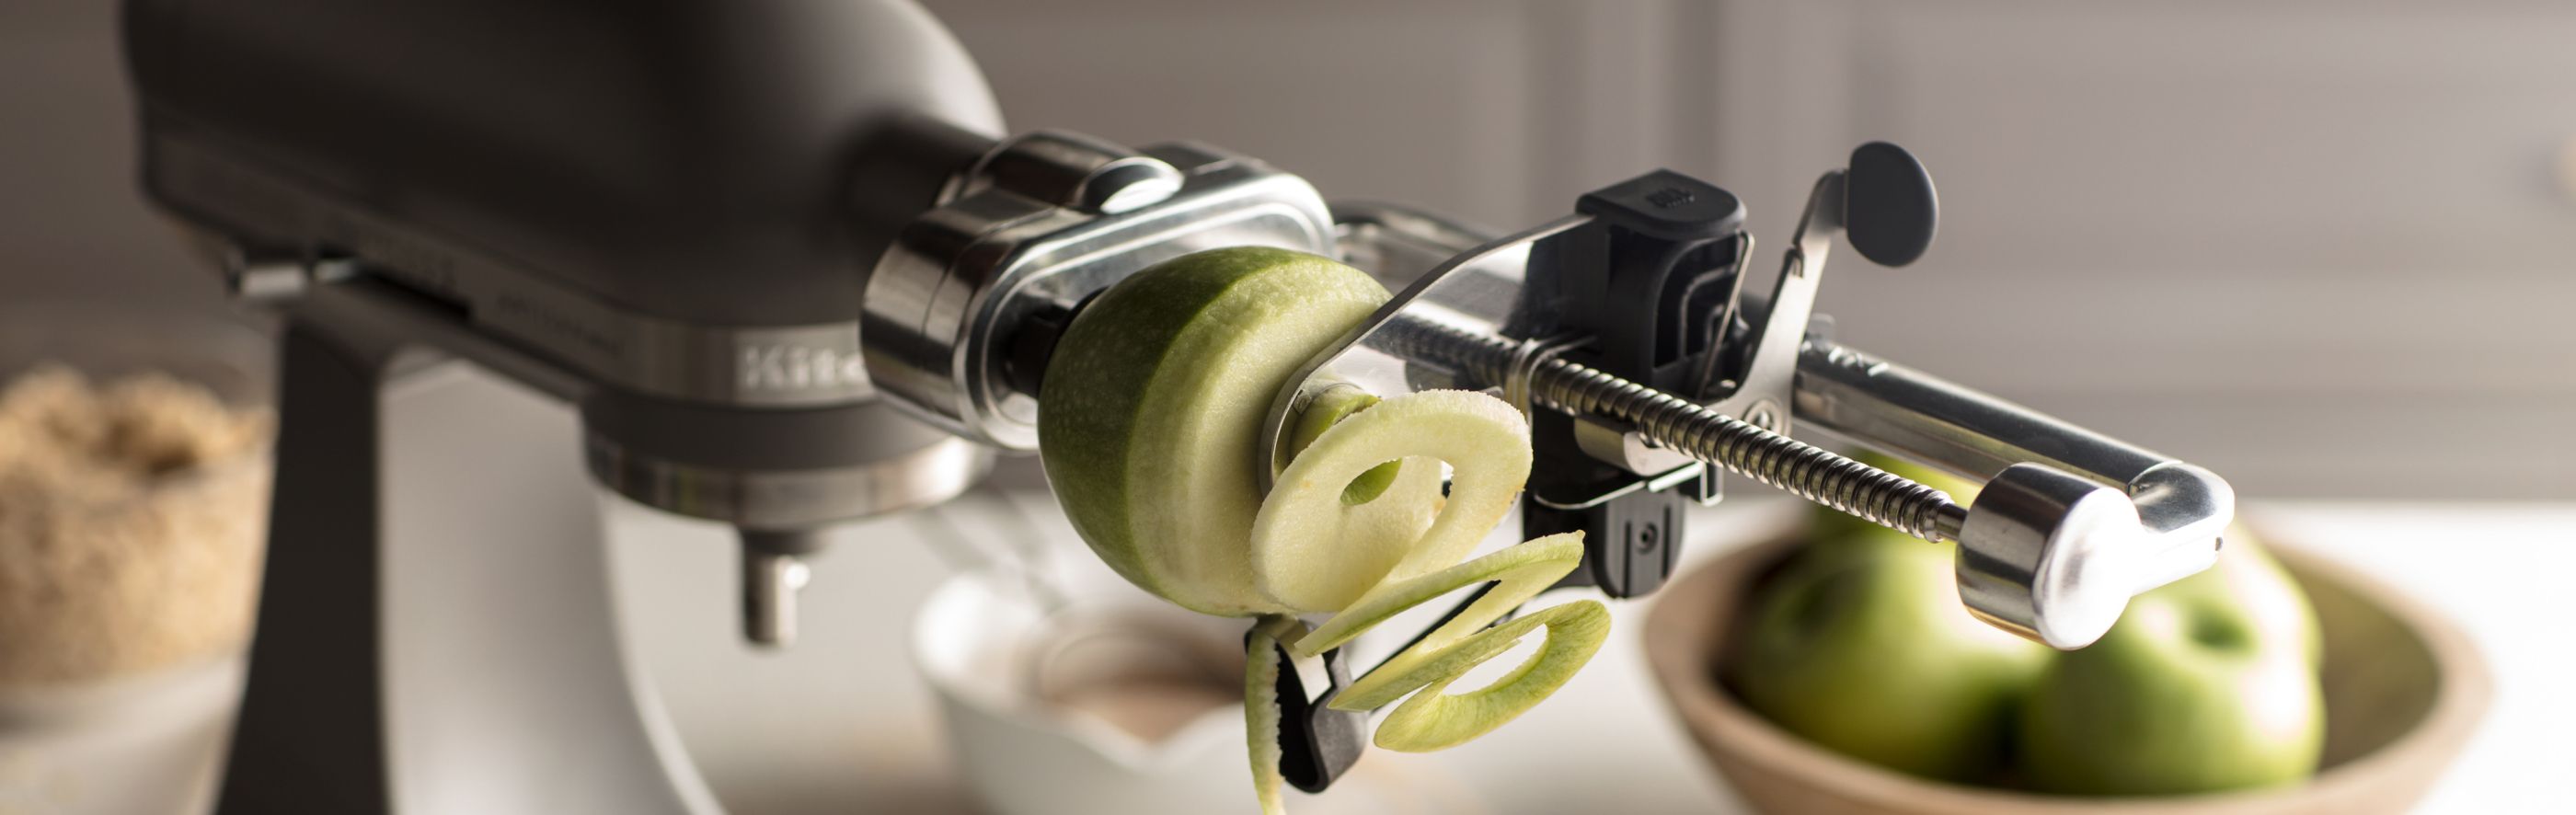 绿色的青苹果正在螺旋使用KitchenAid®新鲜准备附件。“>
                 </picture>
                </div>
                <div class=